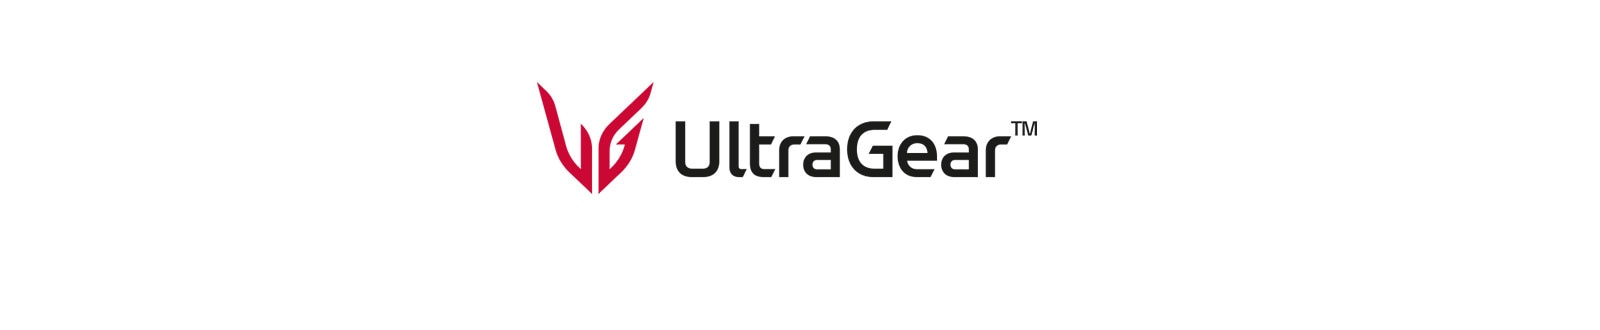 UltraGear™ Logo.